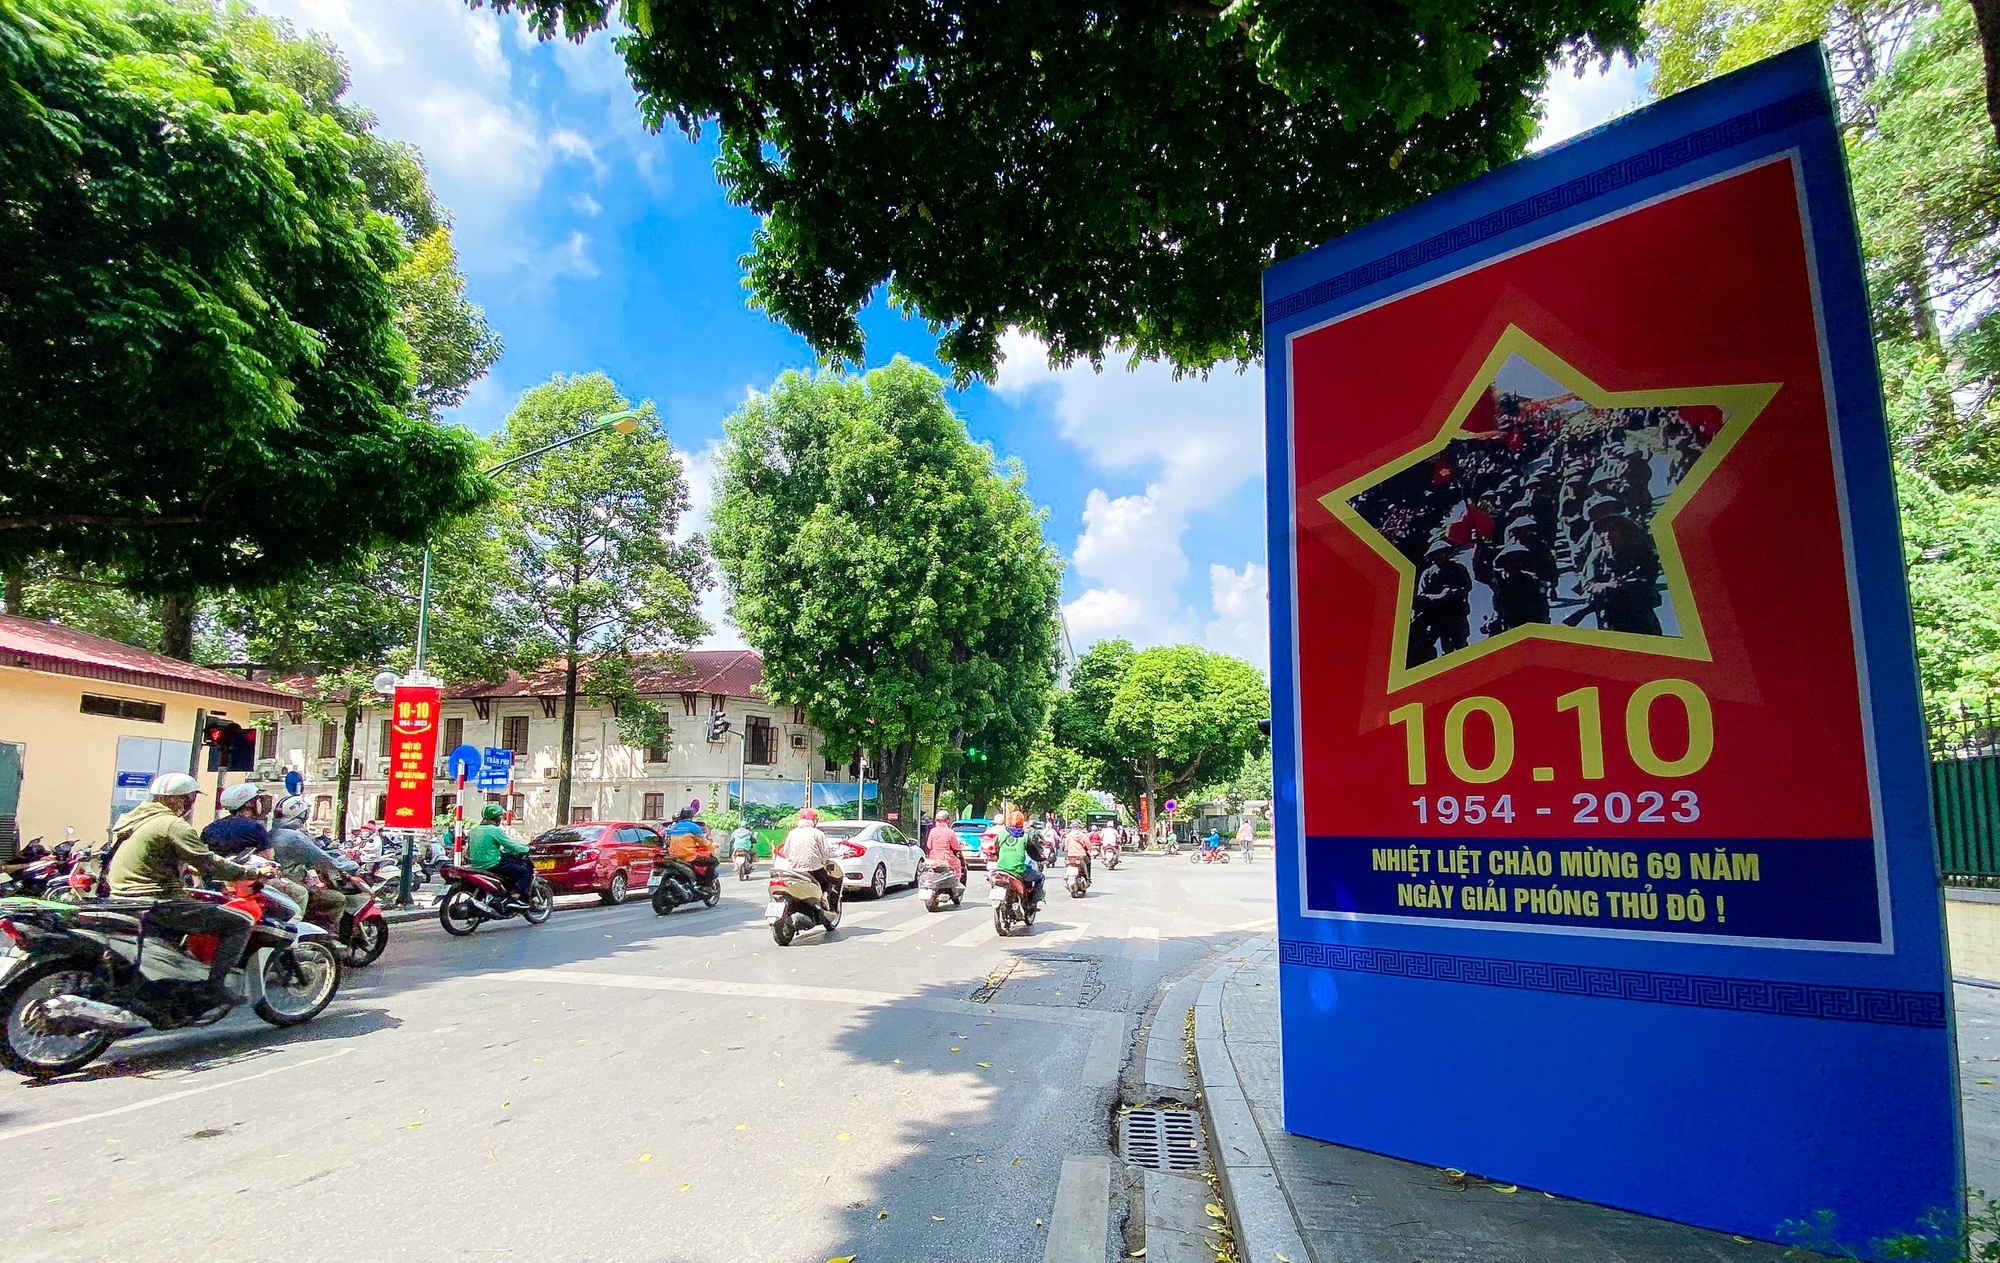 Đường phố Hà Nội trang hoàng mừng kỷ niệm 69 năm Ngày Giải phóng Thủ đô - Ảnh 6.